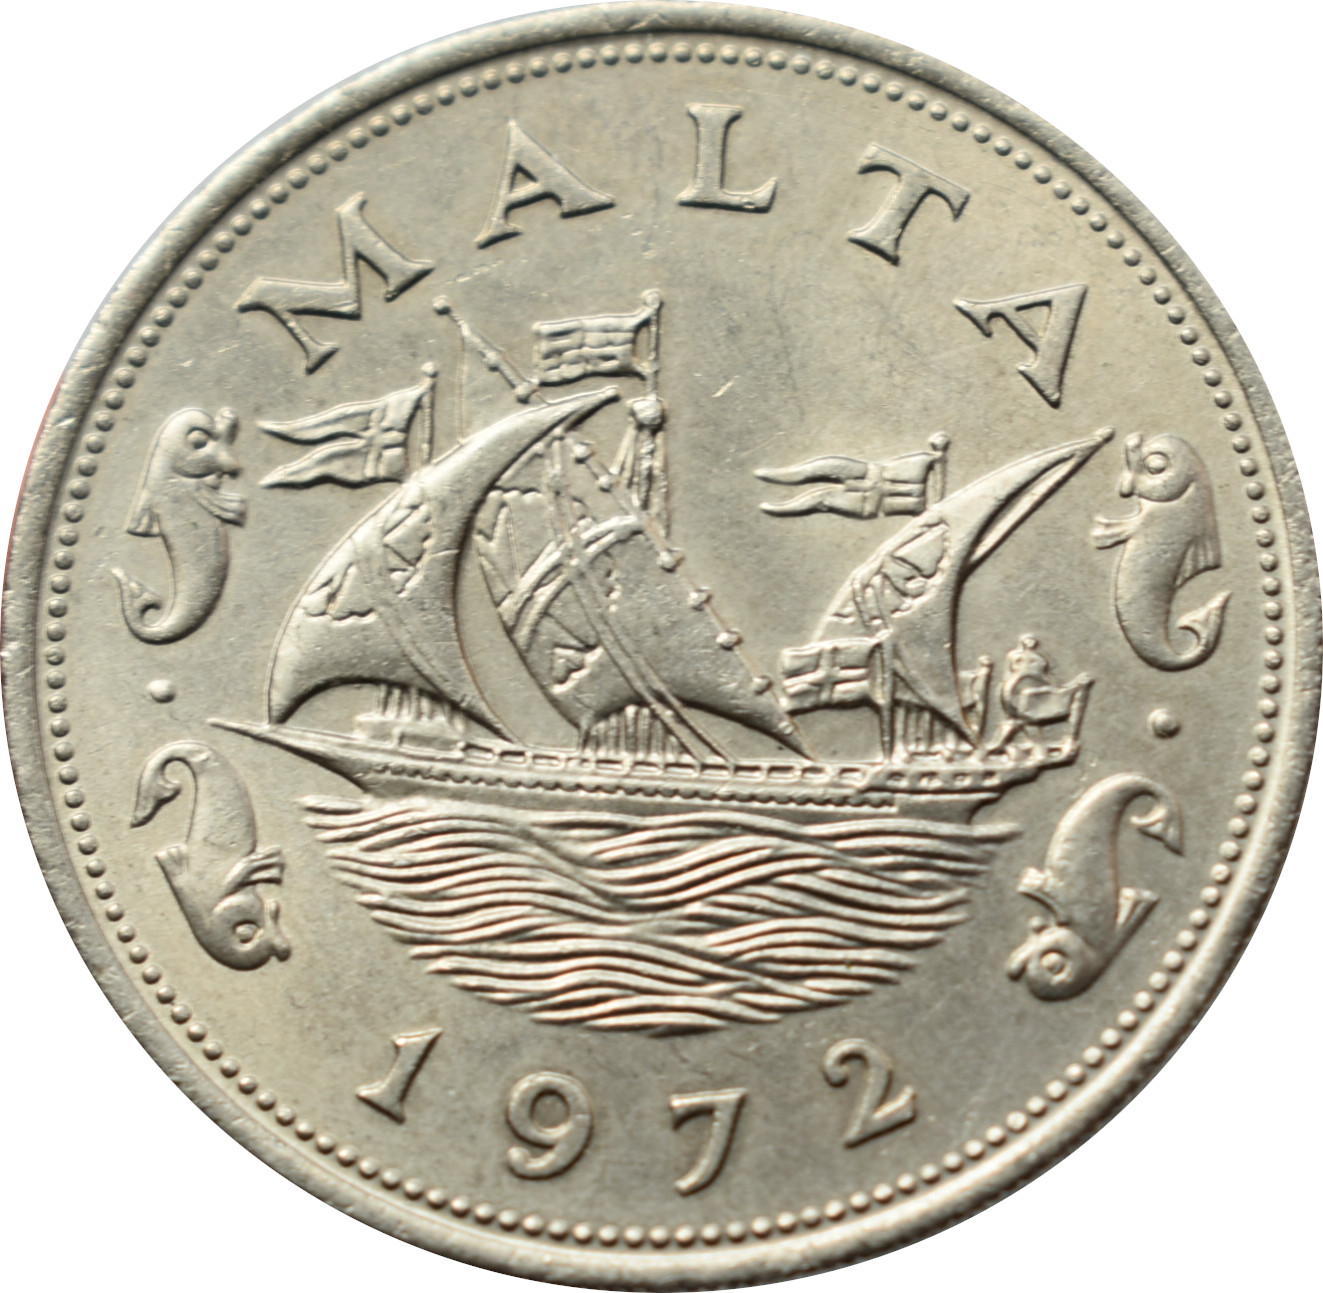 Malta 10 Cents 1972